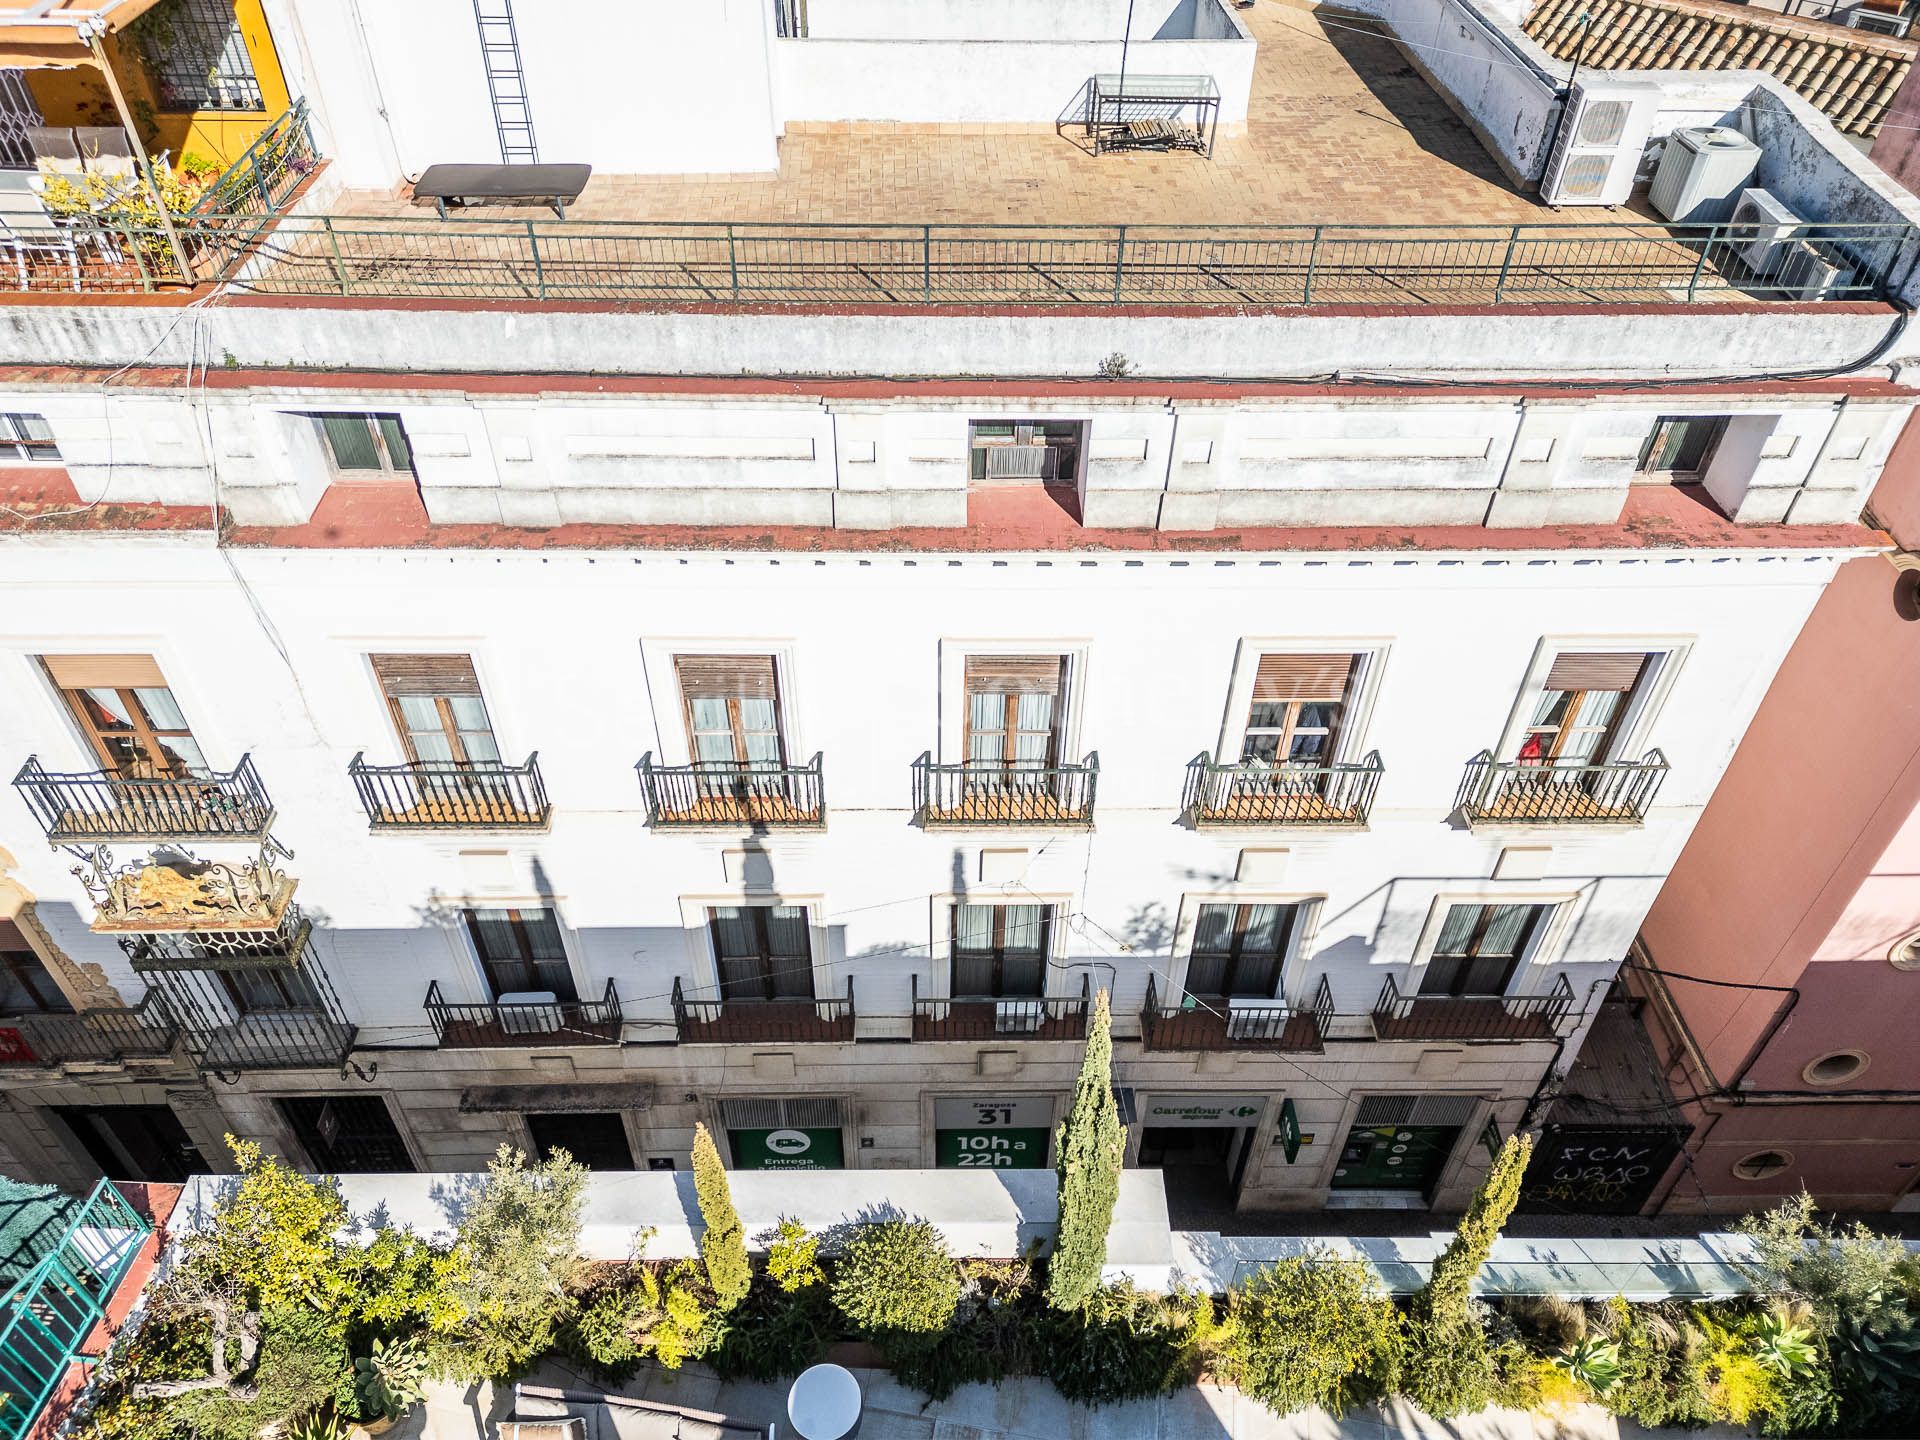 Inmueble ubicado en el centro de Sevilla con destacados balcones orientados a la calle Zaragoza.